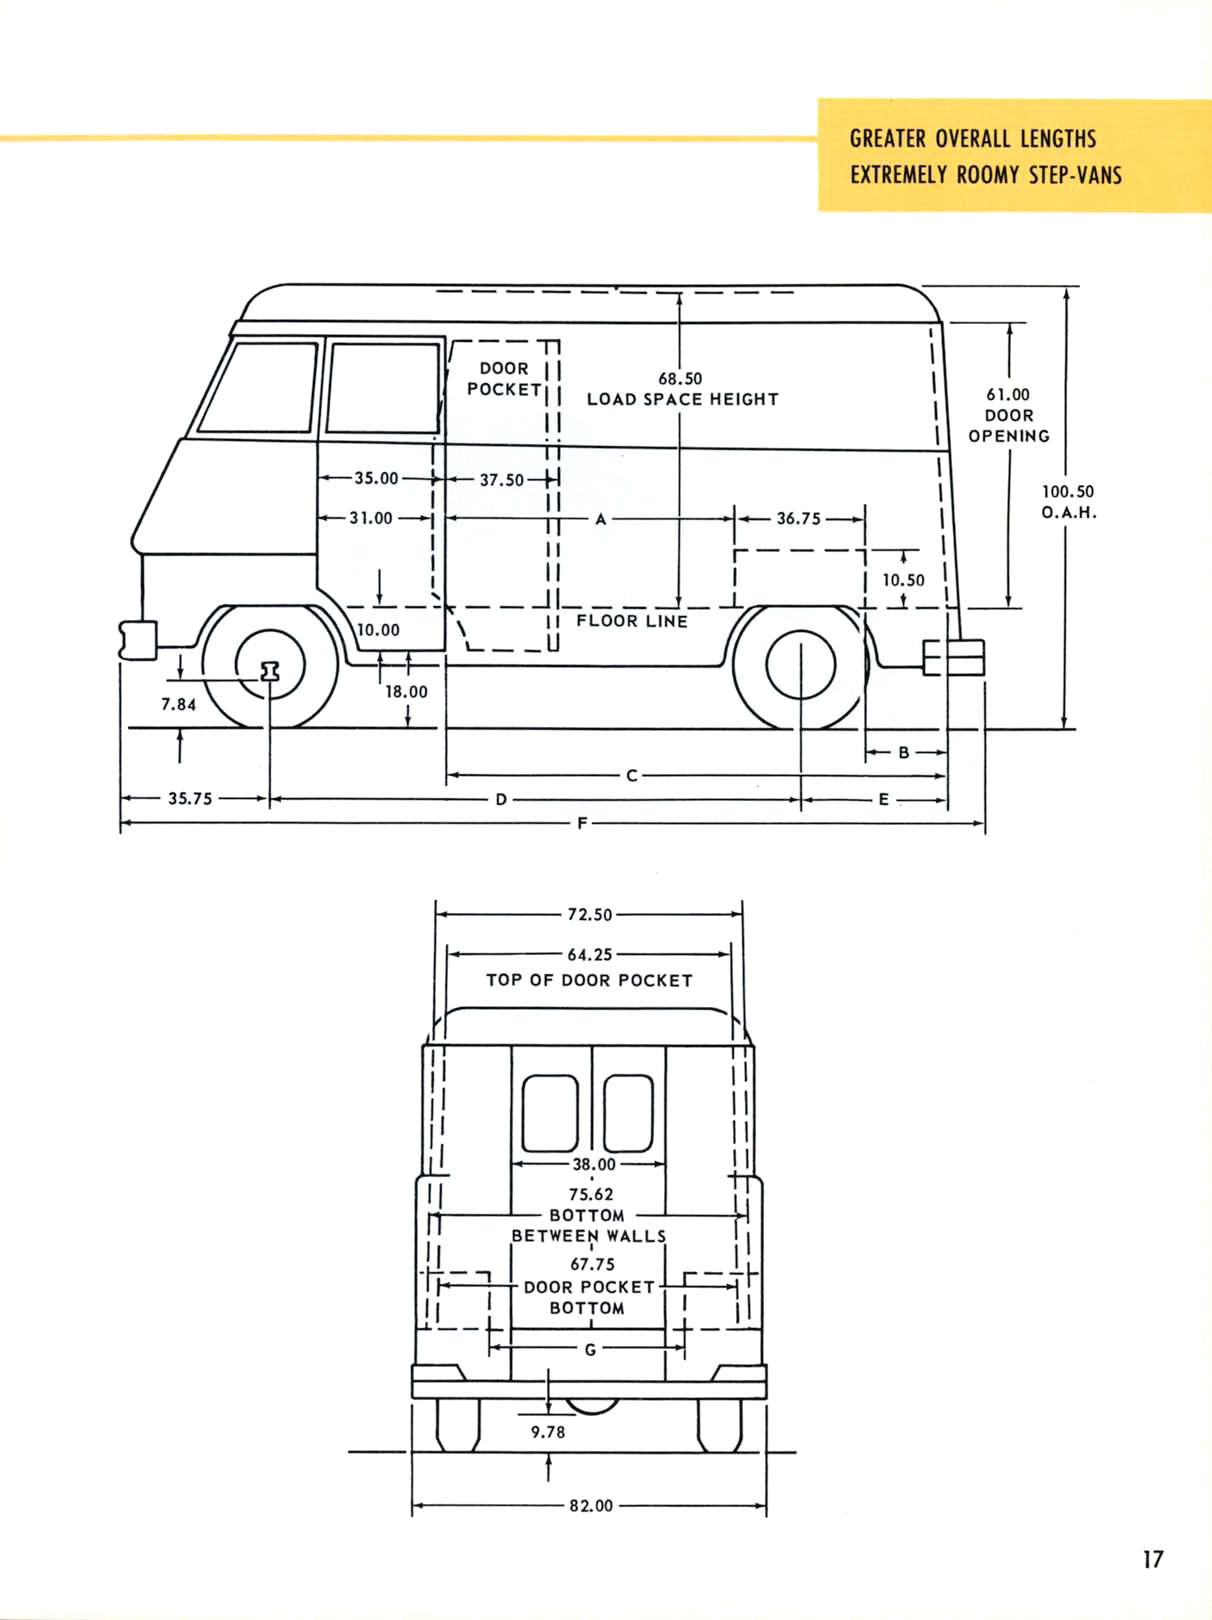 1958_Chevrolet_Truck_Engineering_Features-17